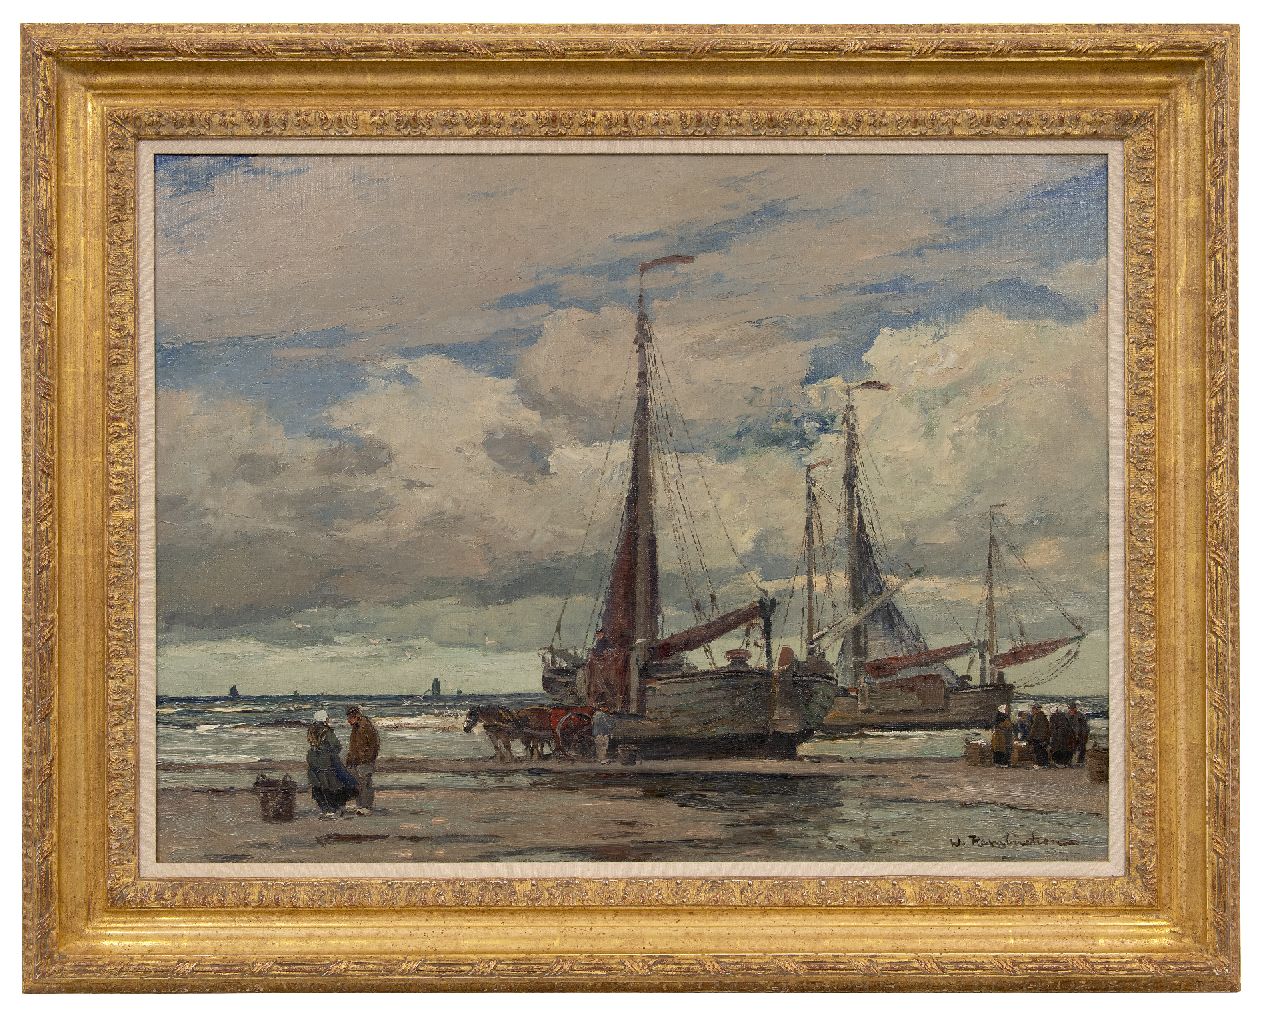 Hambüchen W.  | Wilhelm Hambüchen | Schilderijen te koop aangeboden | Na aankomst van de vloot, olieverf op doek 60,2 x 80,4 cm, gesigneerd rechtsonder